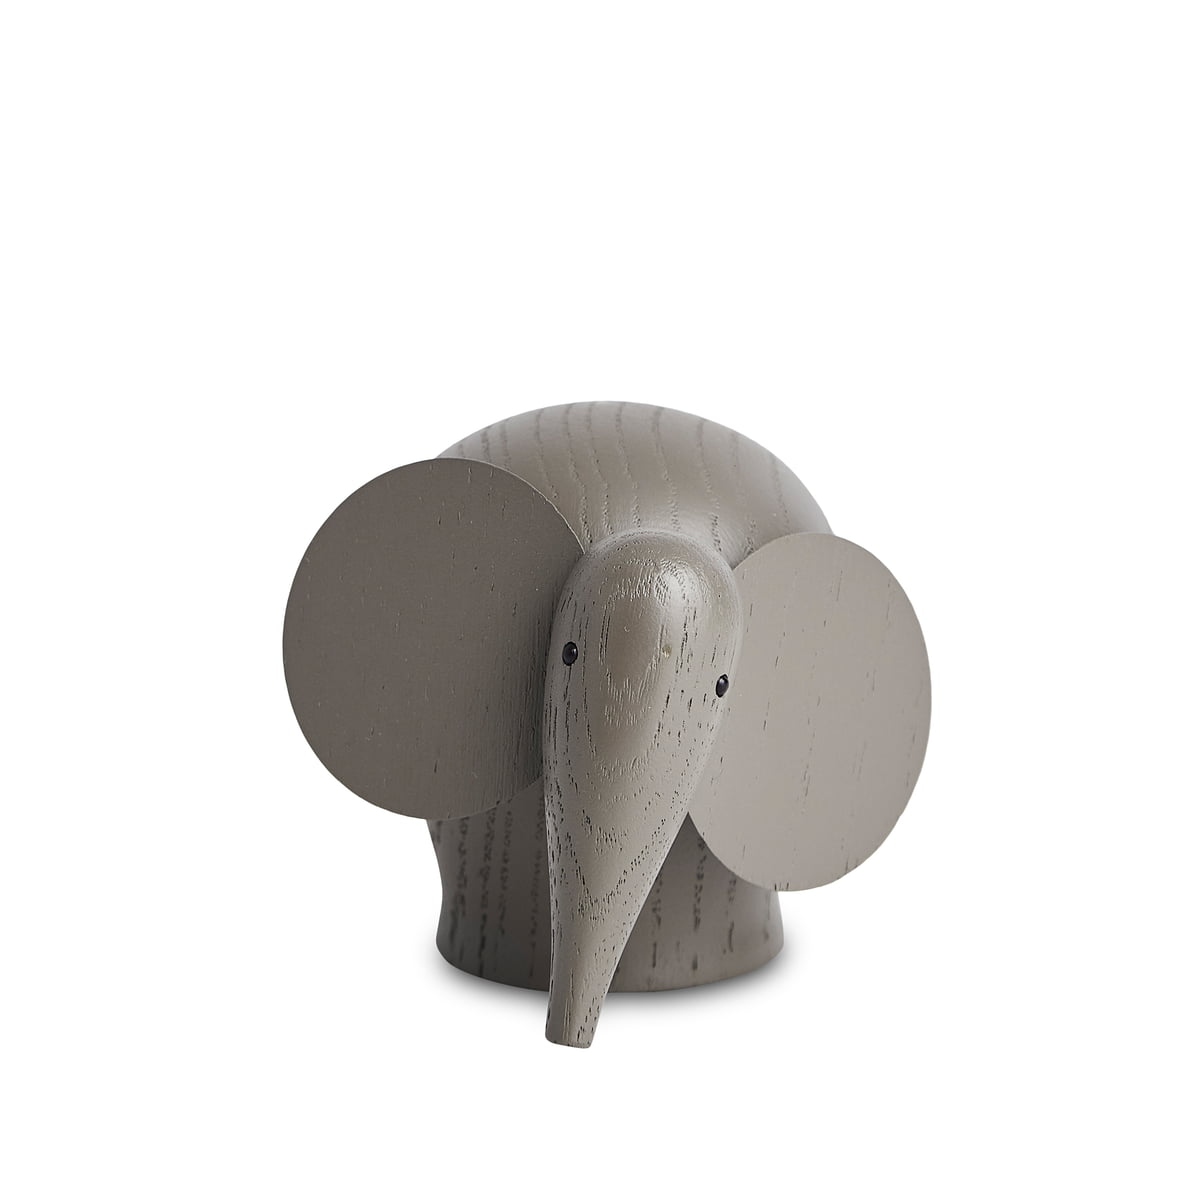 Woud - Nunu Elephant